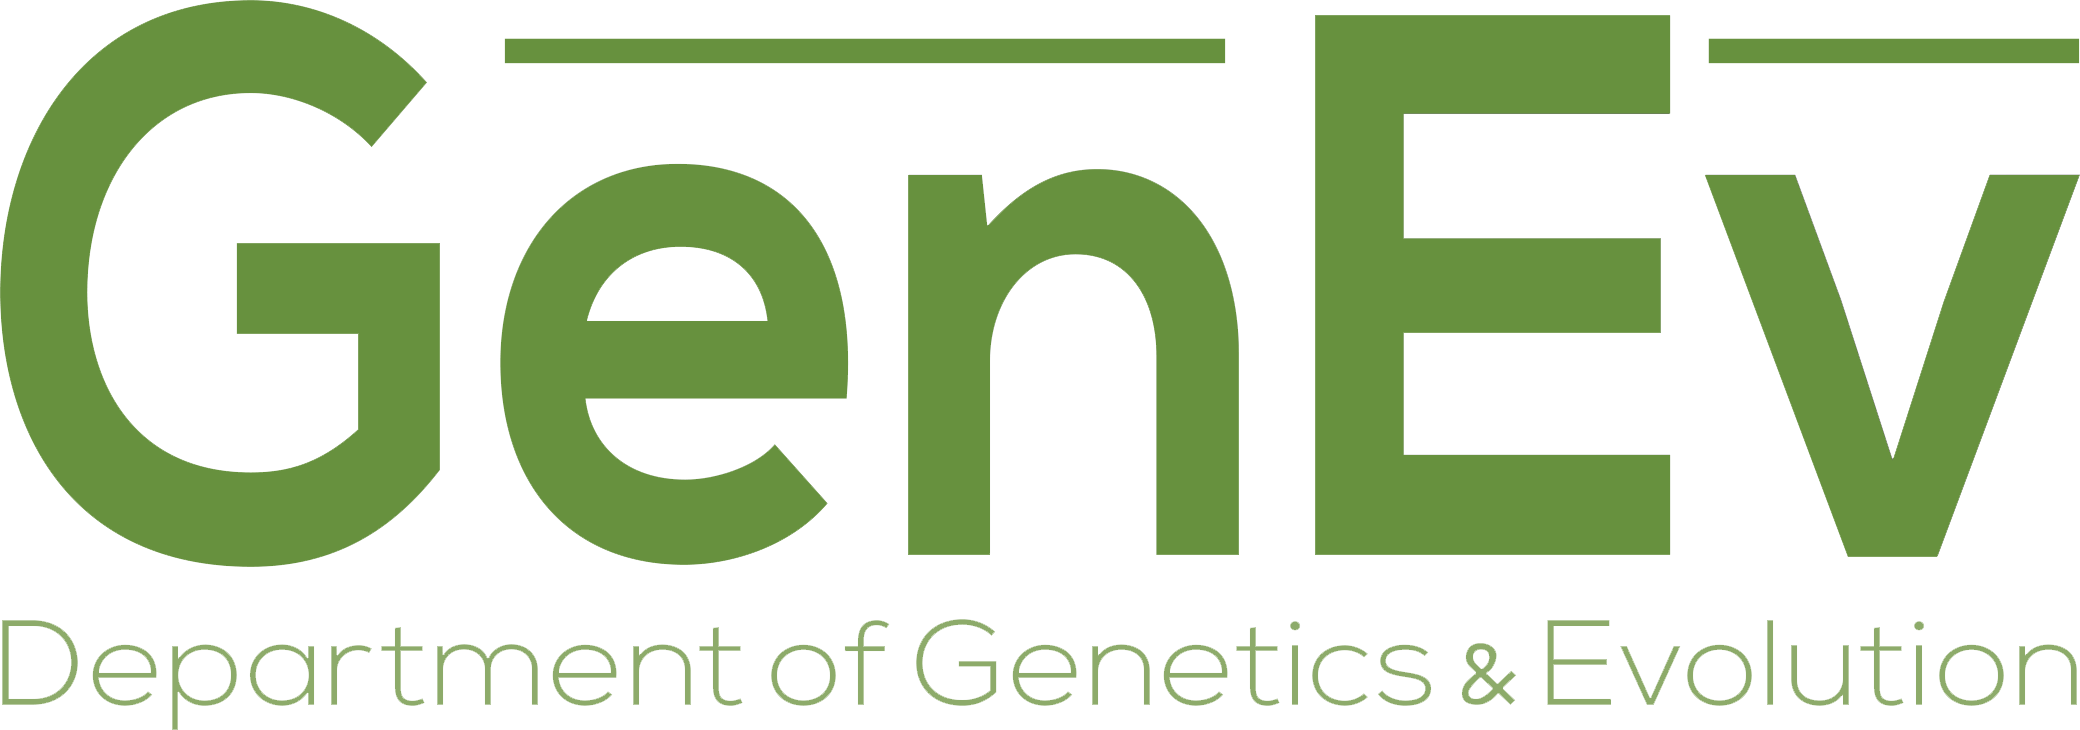 Department of Genetics & Evolution